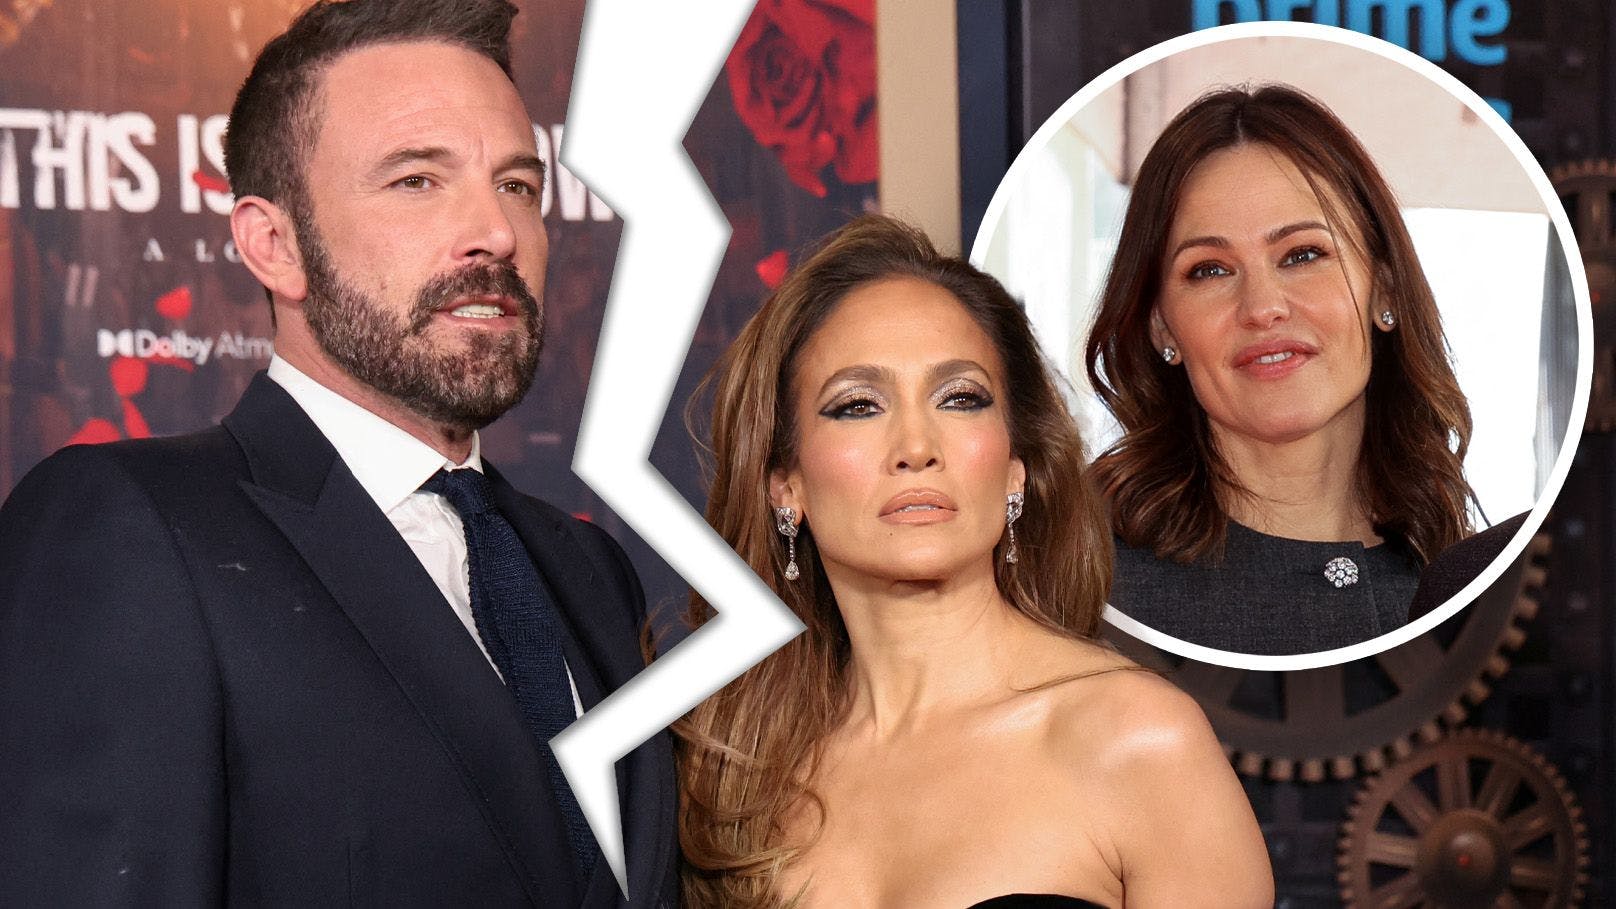 Ehe-Aus! J.Lo & Affleck bereits "seit Monaten getrennt"